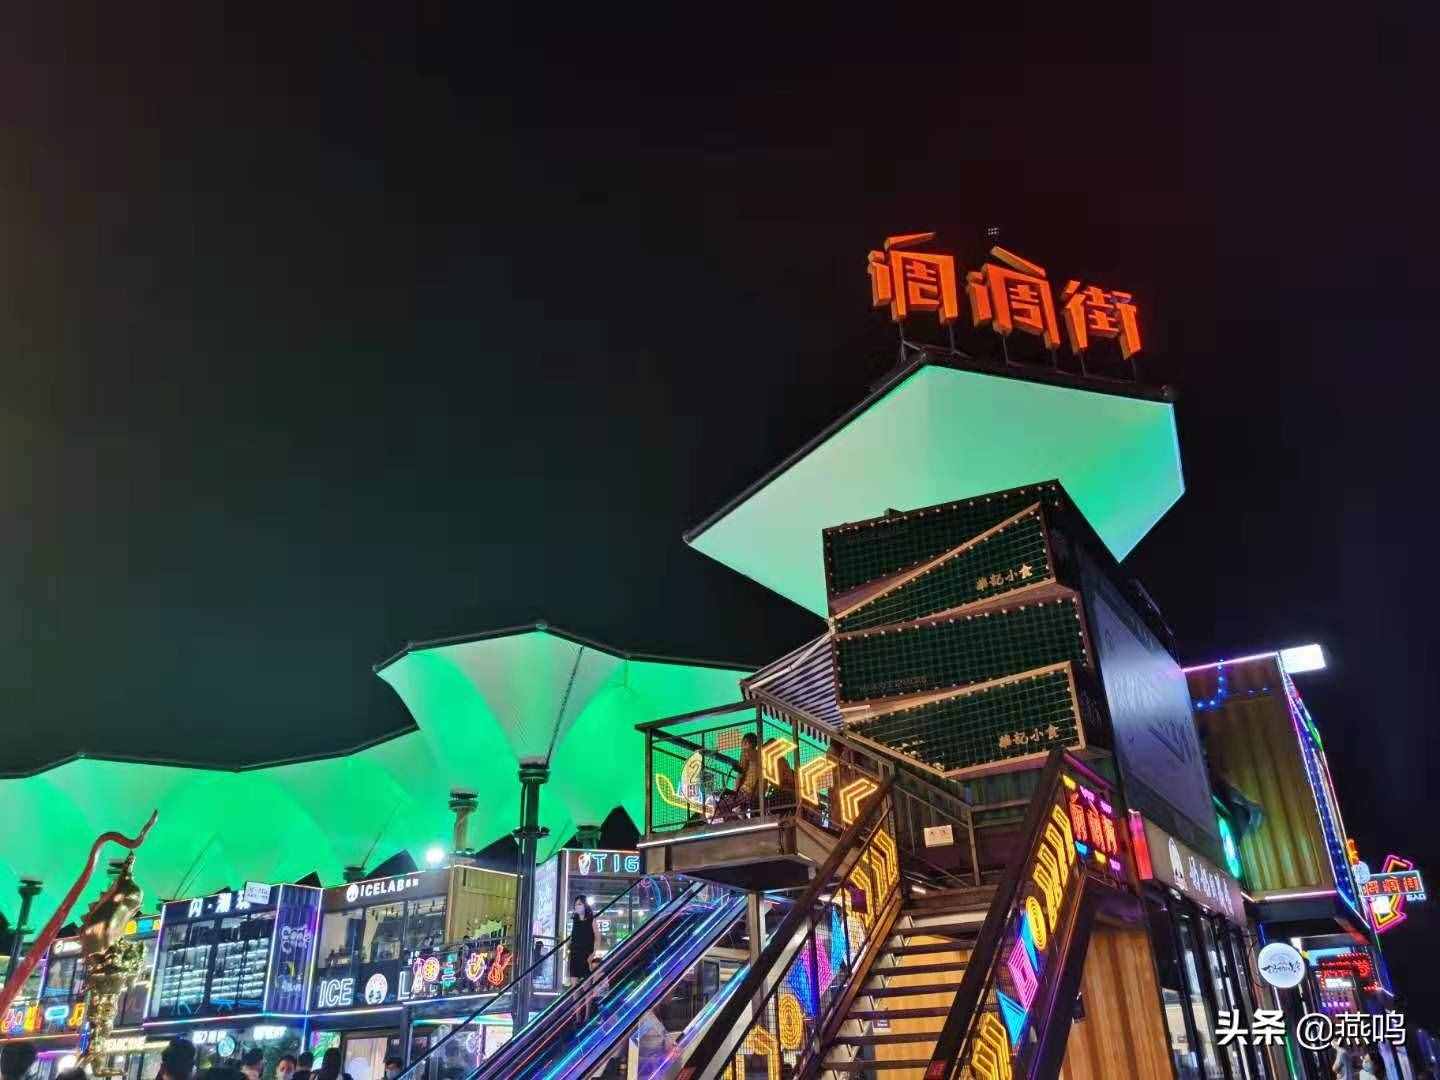 “丝路大V打卡最新北京”,向世界讲述新北京故事